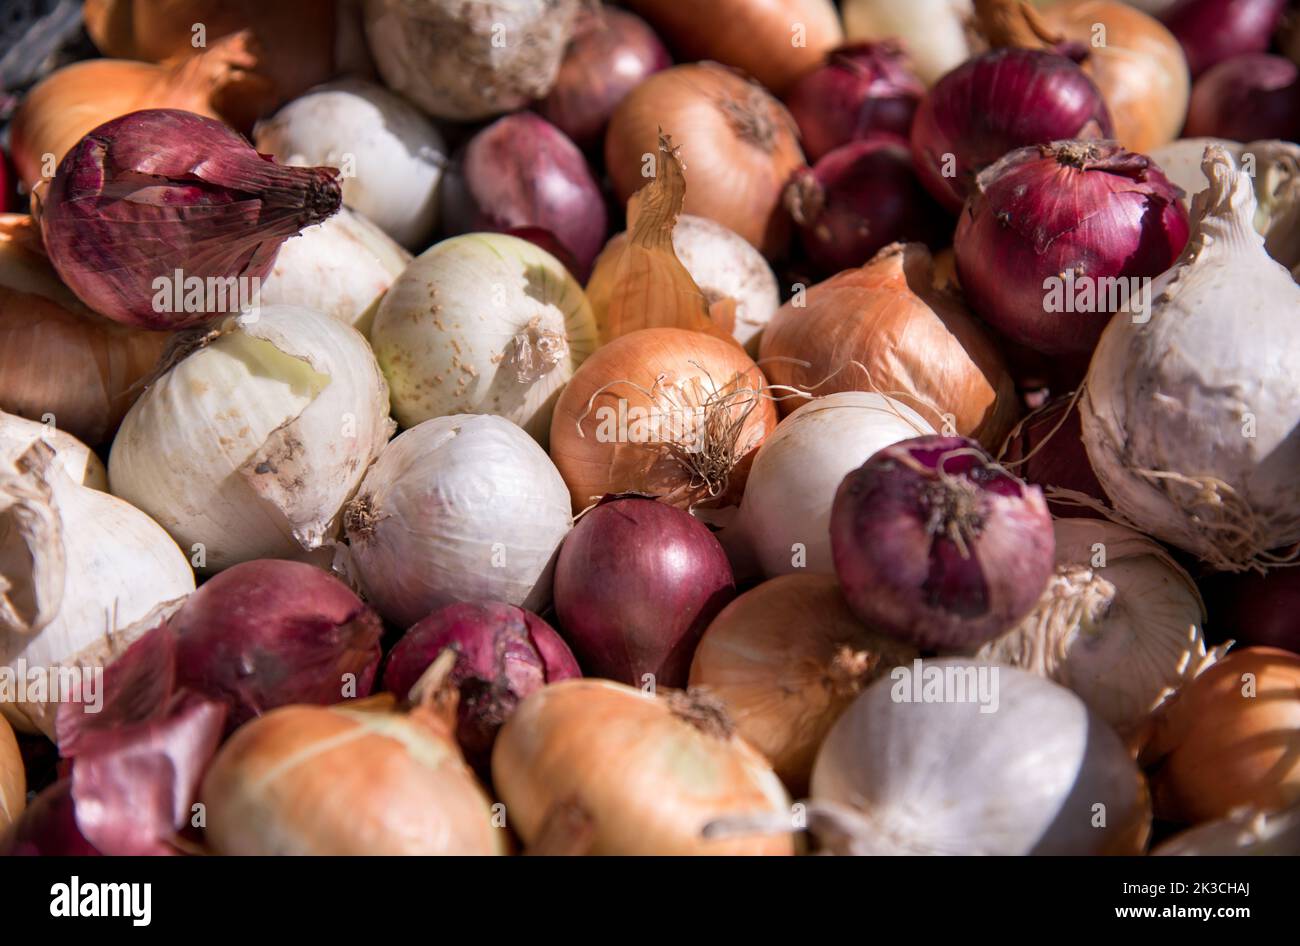 Haufen von reifen Zwiebeln mit trockener Schale, die während der Ernte auf dem Bauernhof in den Korb gelegt werden Stockfoto